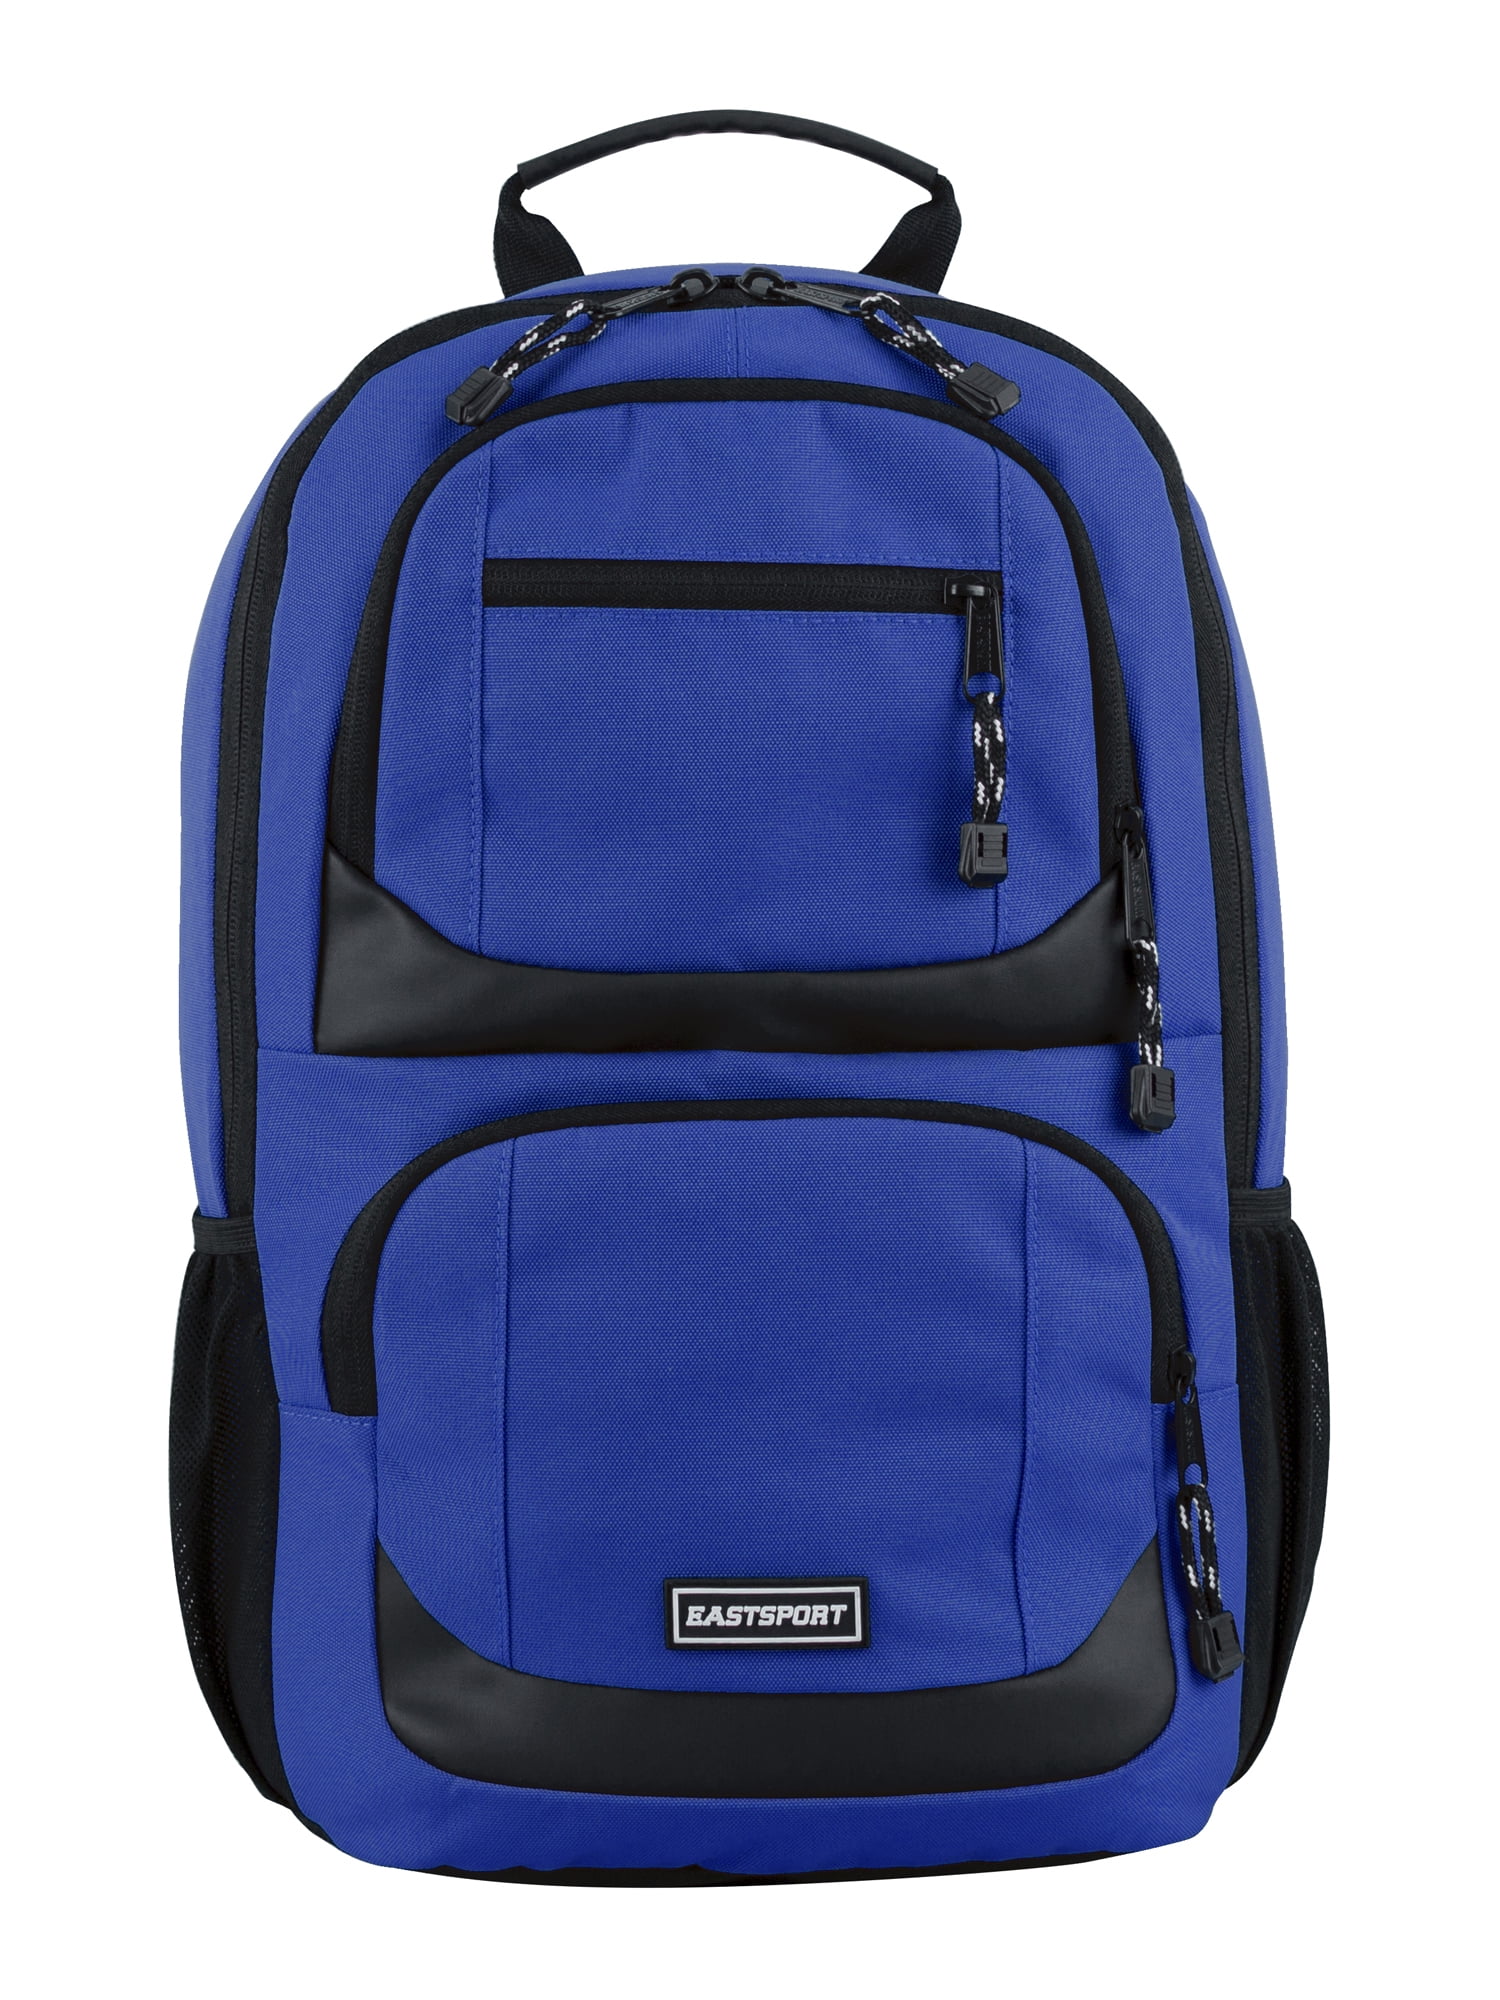 Eastsport Unisex Commuter Tech Backpack, Indigo Blue - Walmart.com